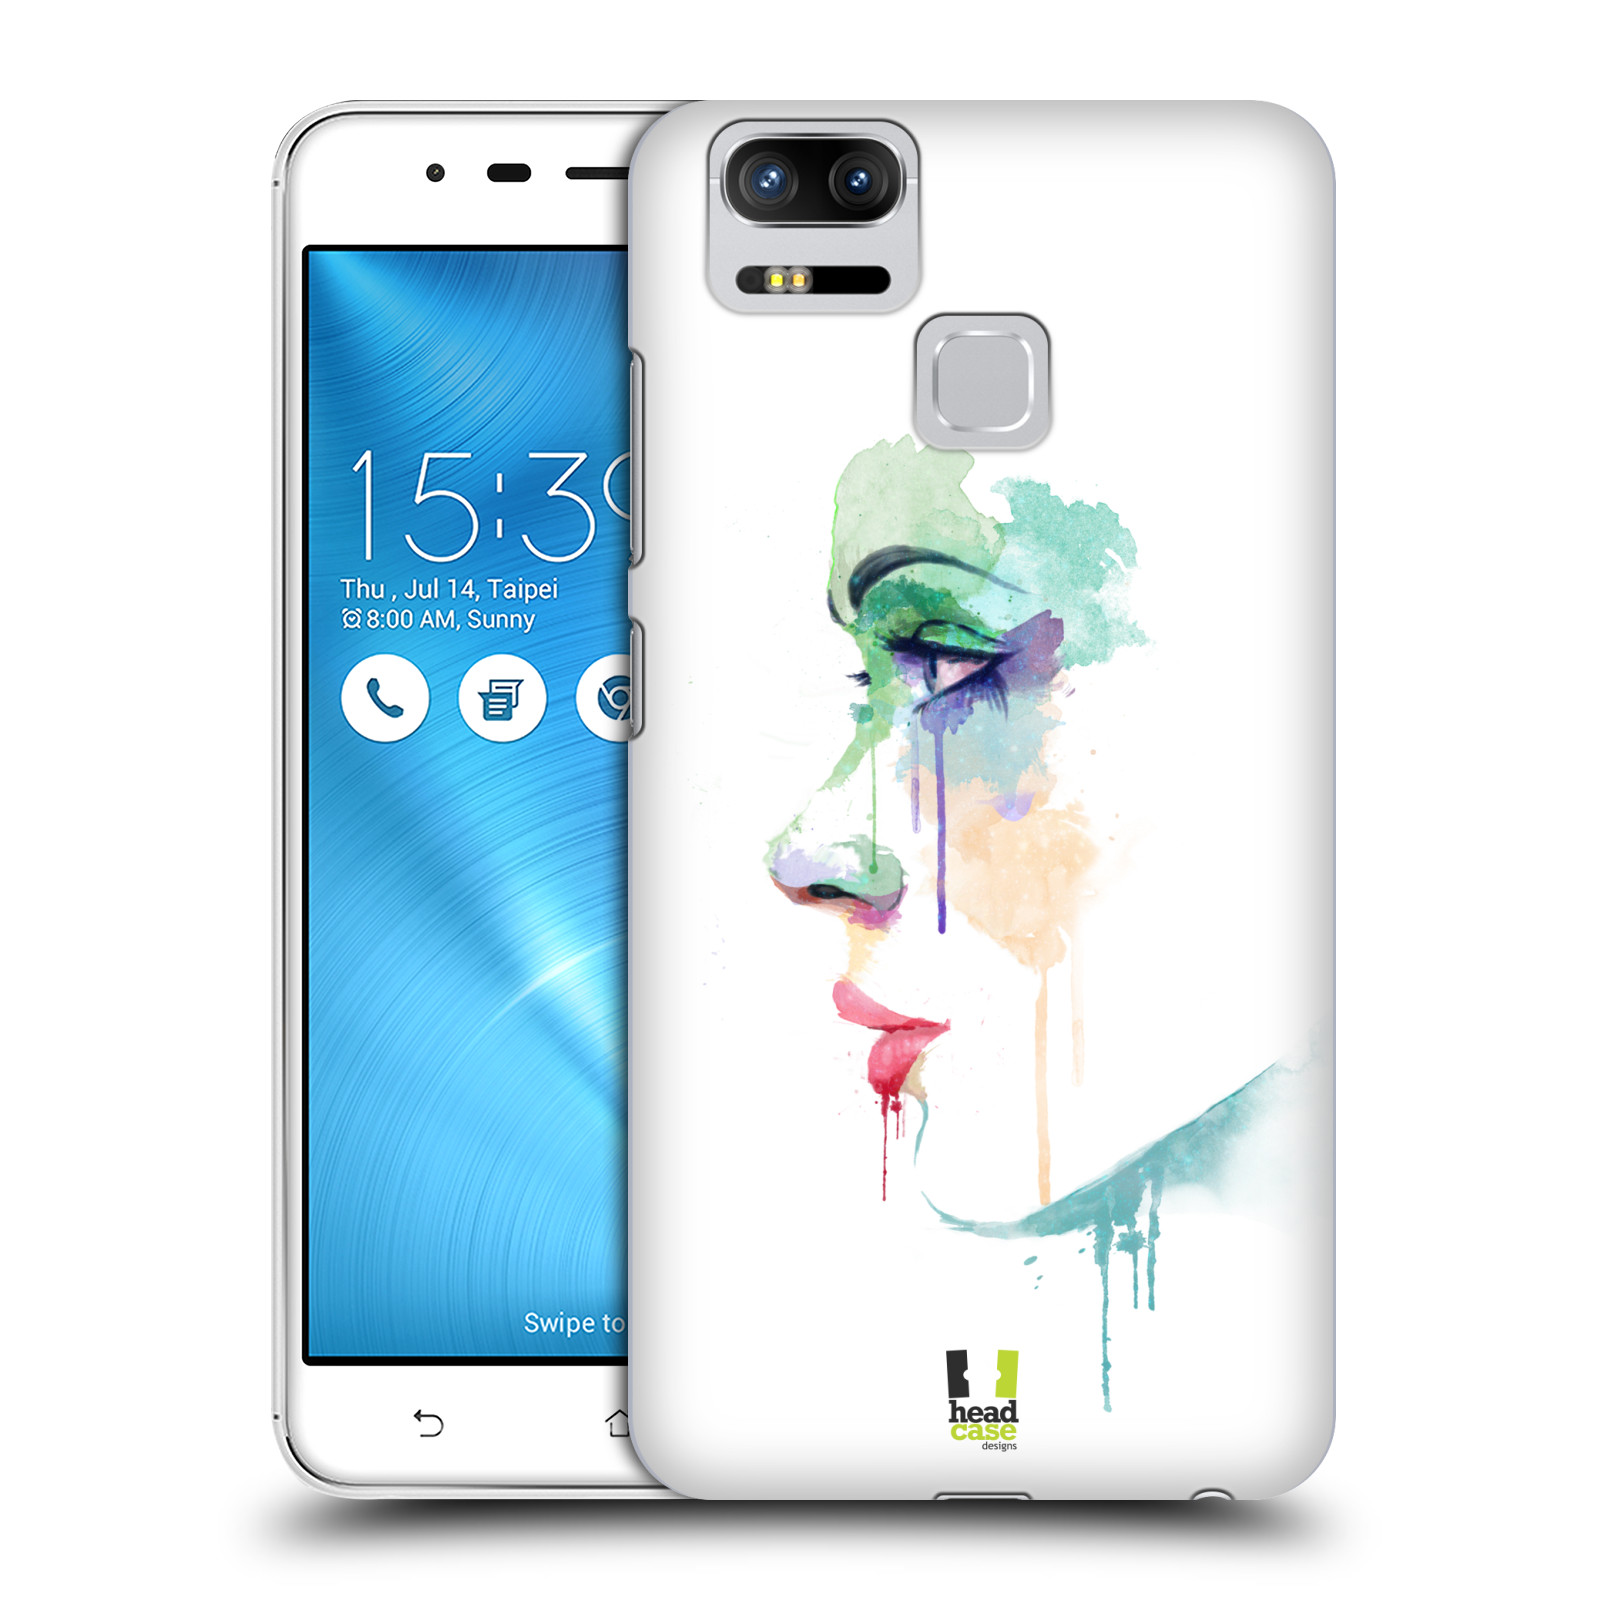 HEAD CASE plastový obal na mobil Asus Zenfone 3 Zoom ZE553KL vzor Tvaře vodní barvy PROFIL